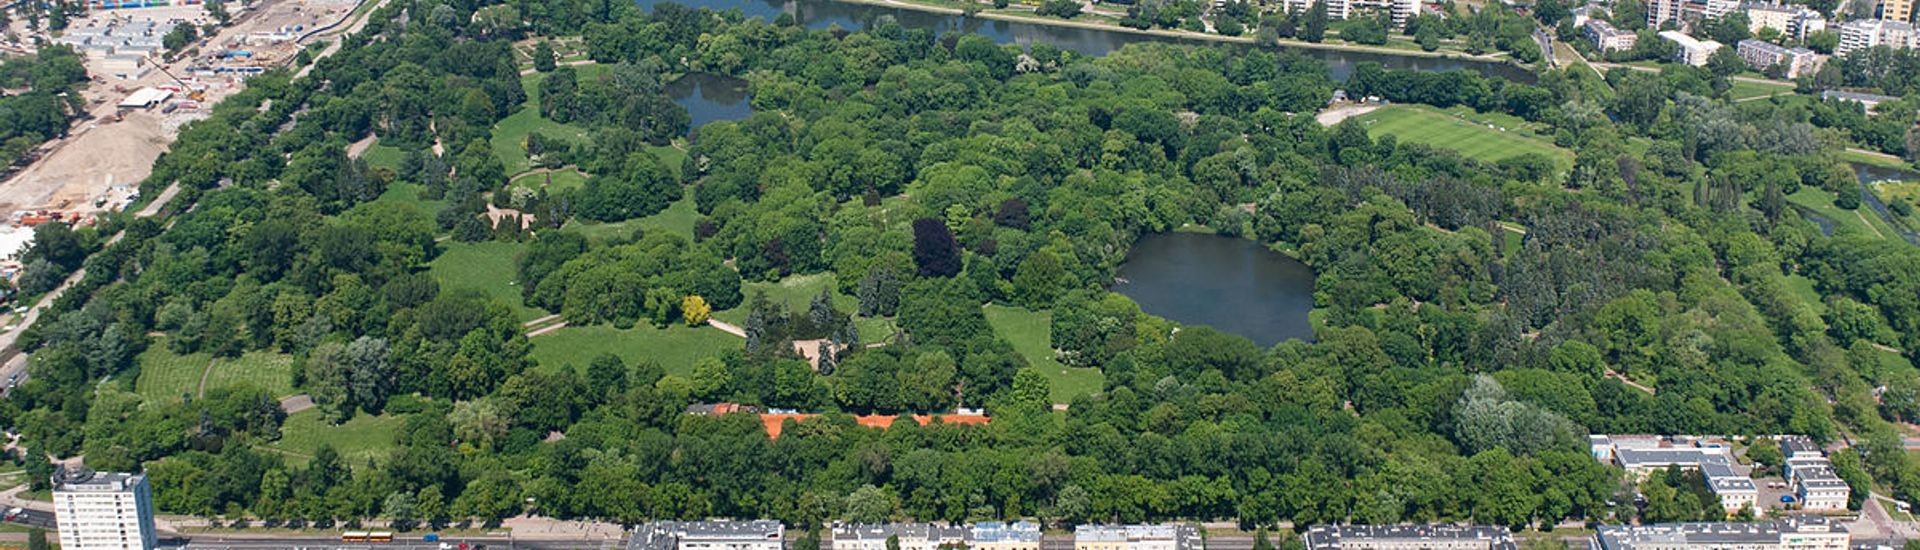 Warszawa - Park Skaryszewski